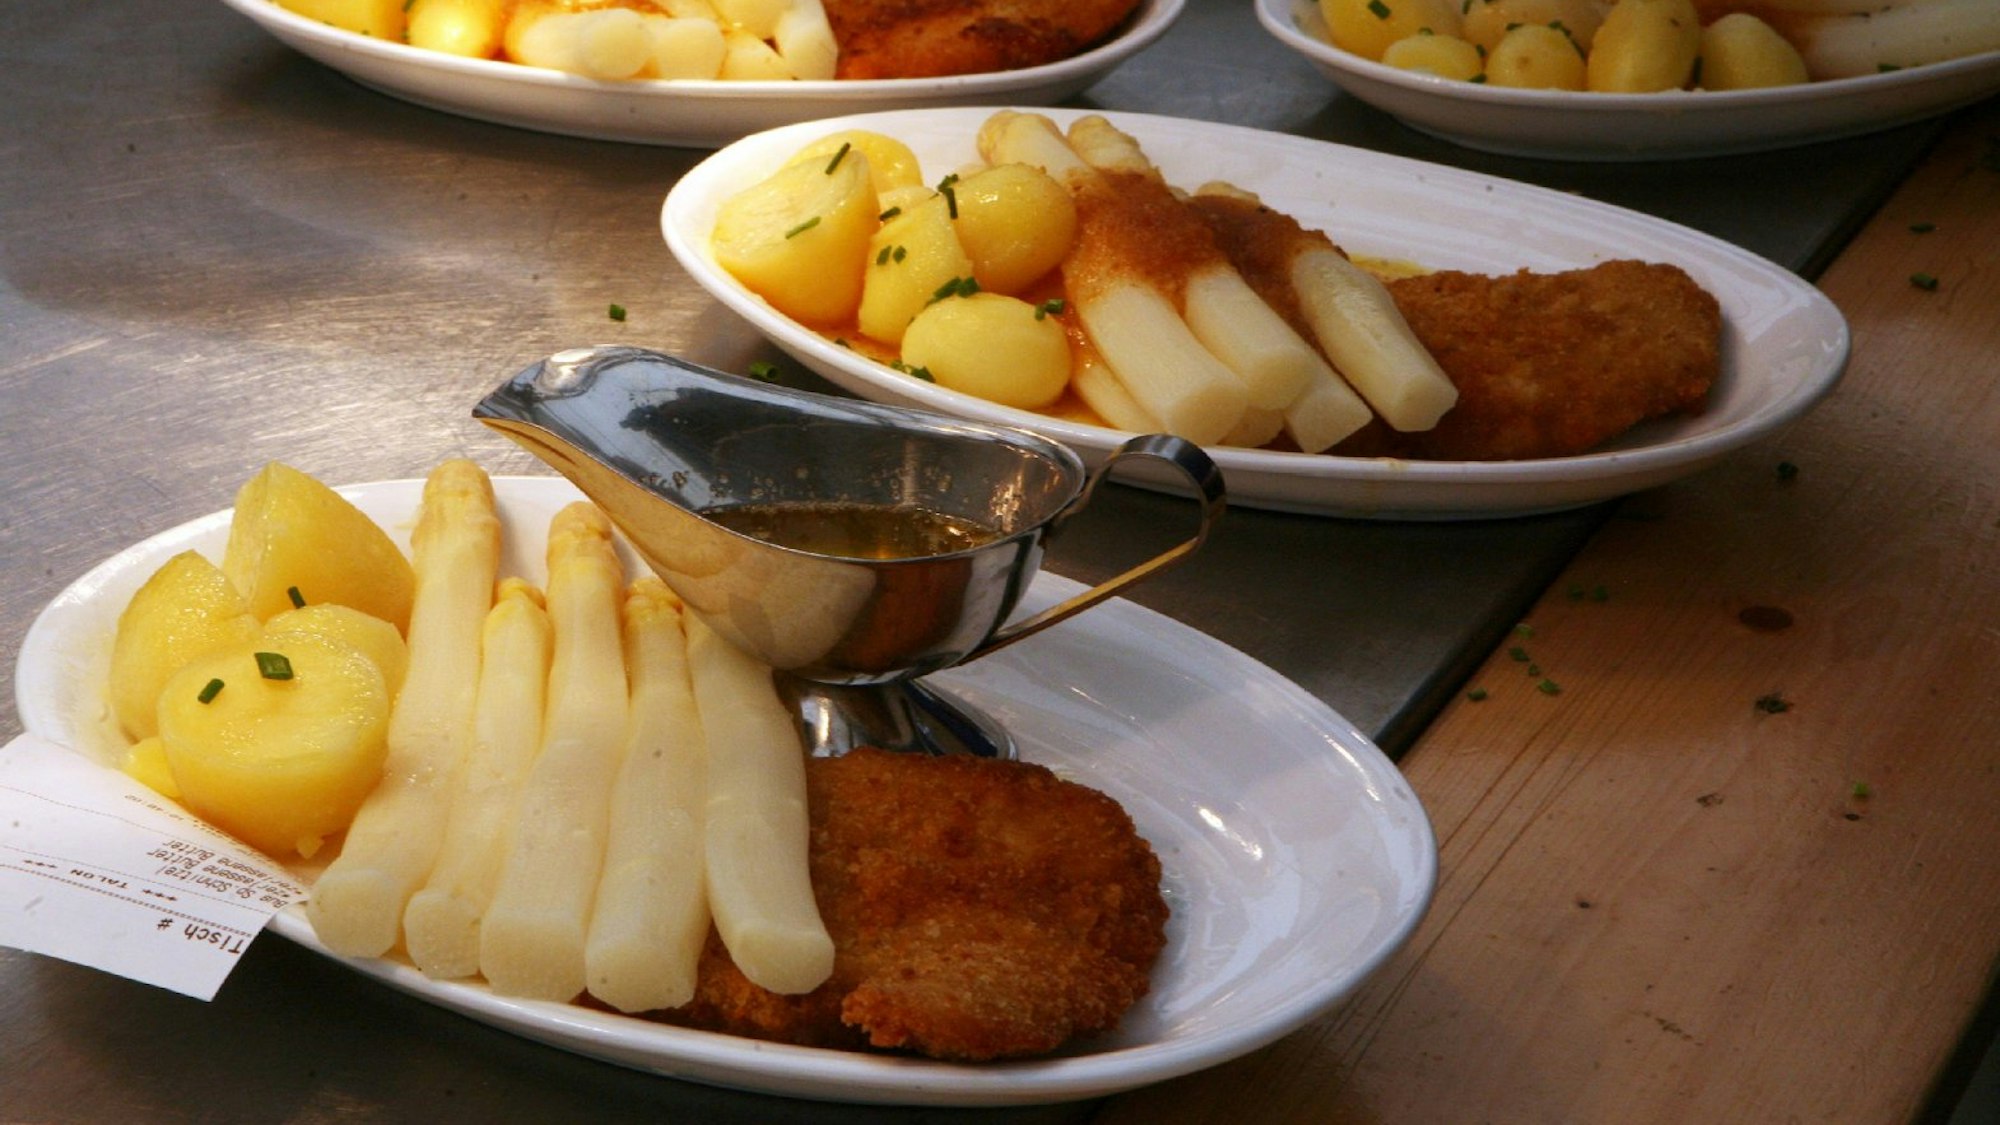 Spargel, Kartoffeln und Schnitzel, auf Tellern angerichtet.